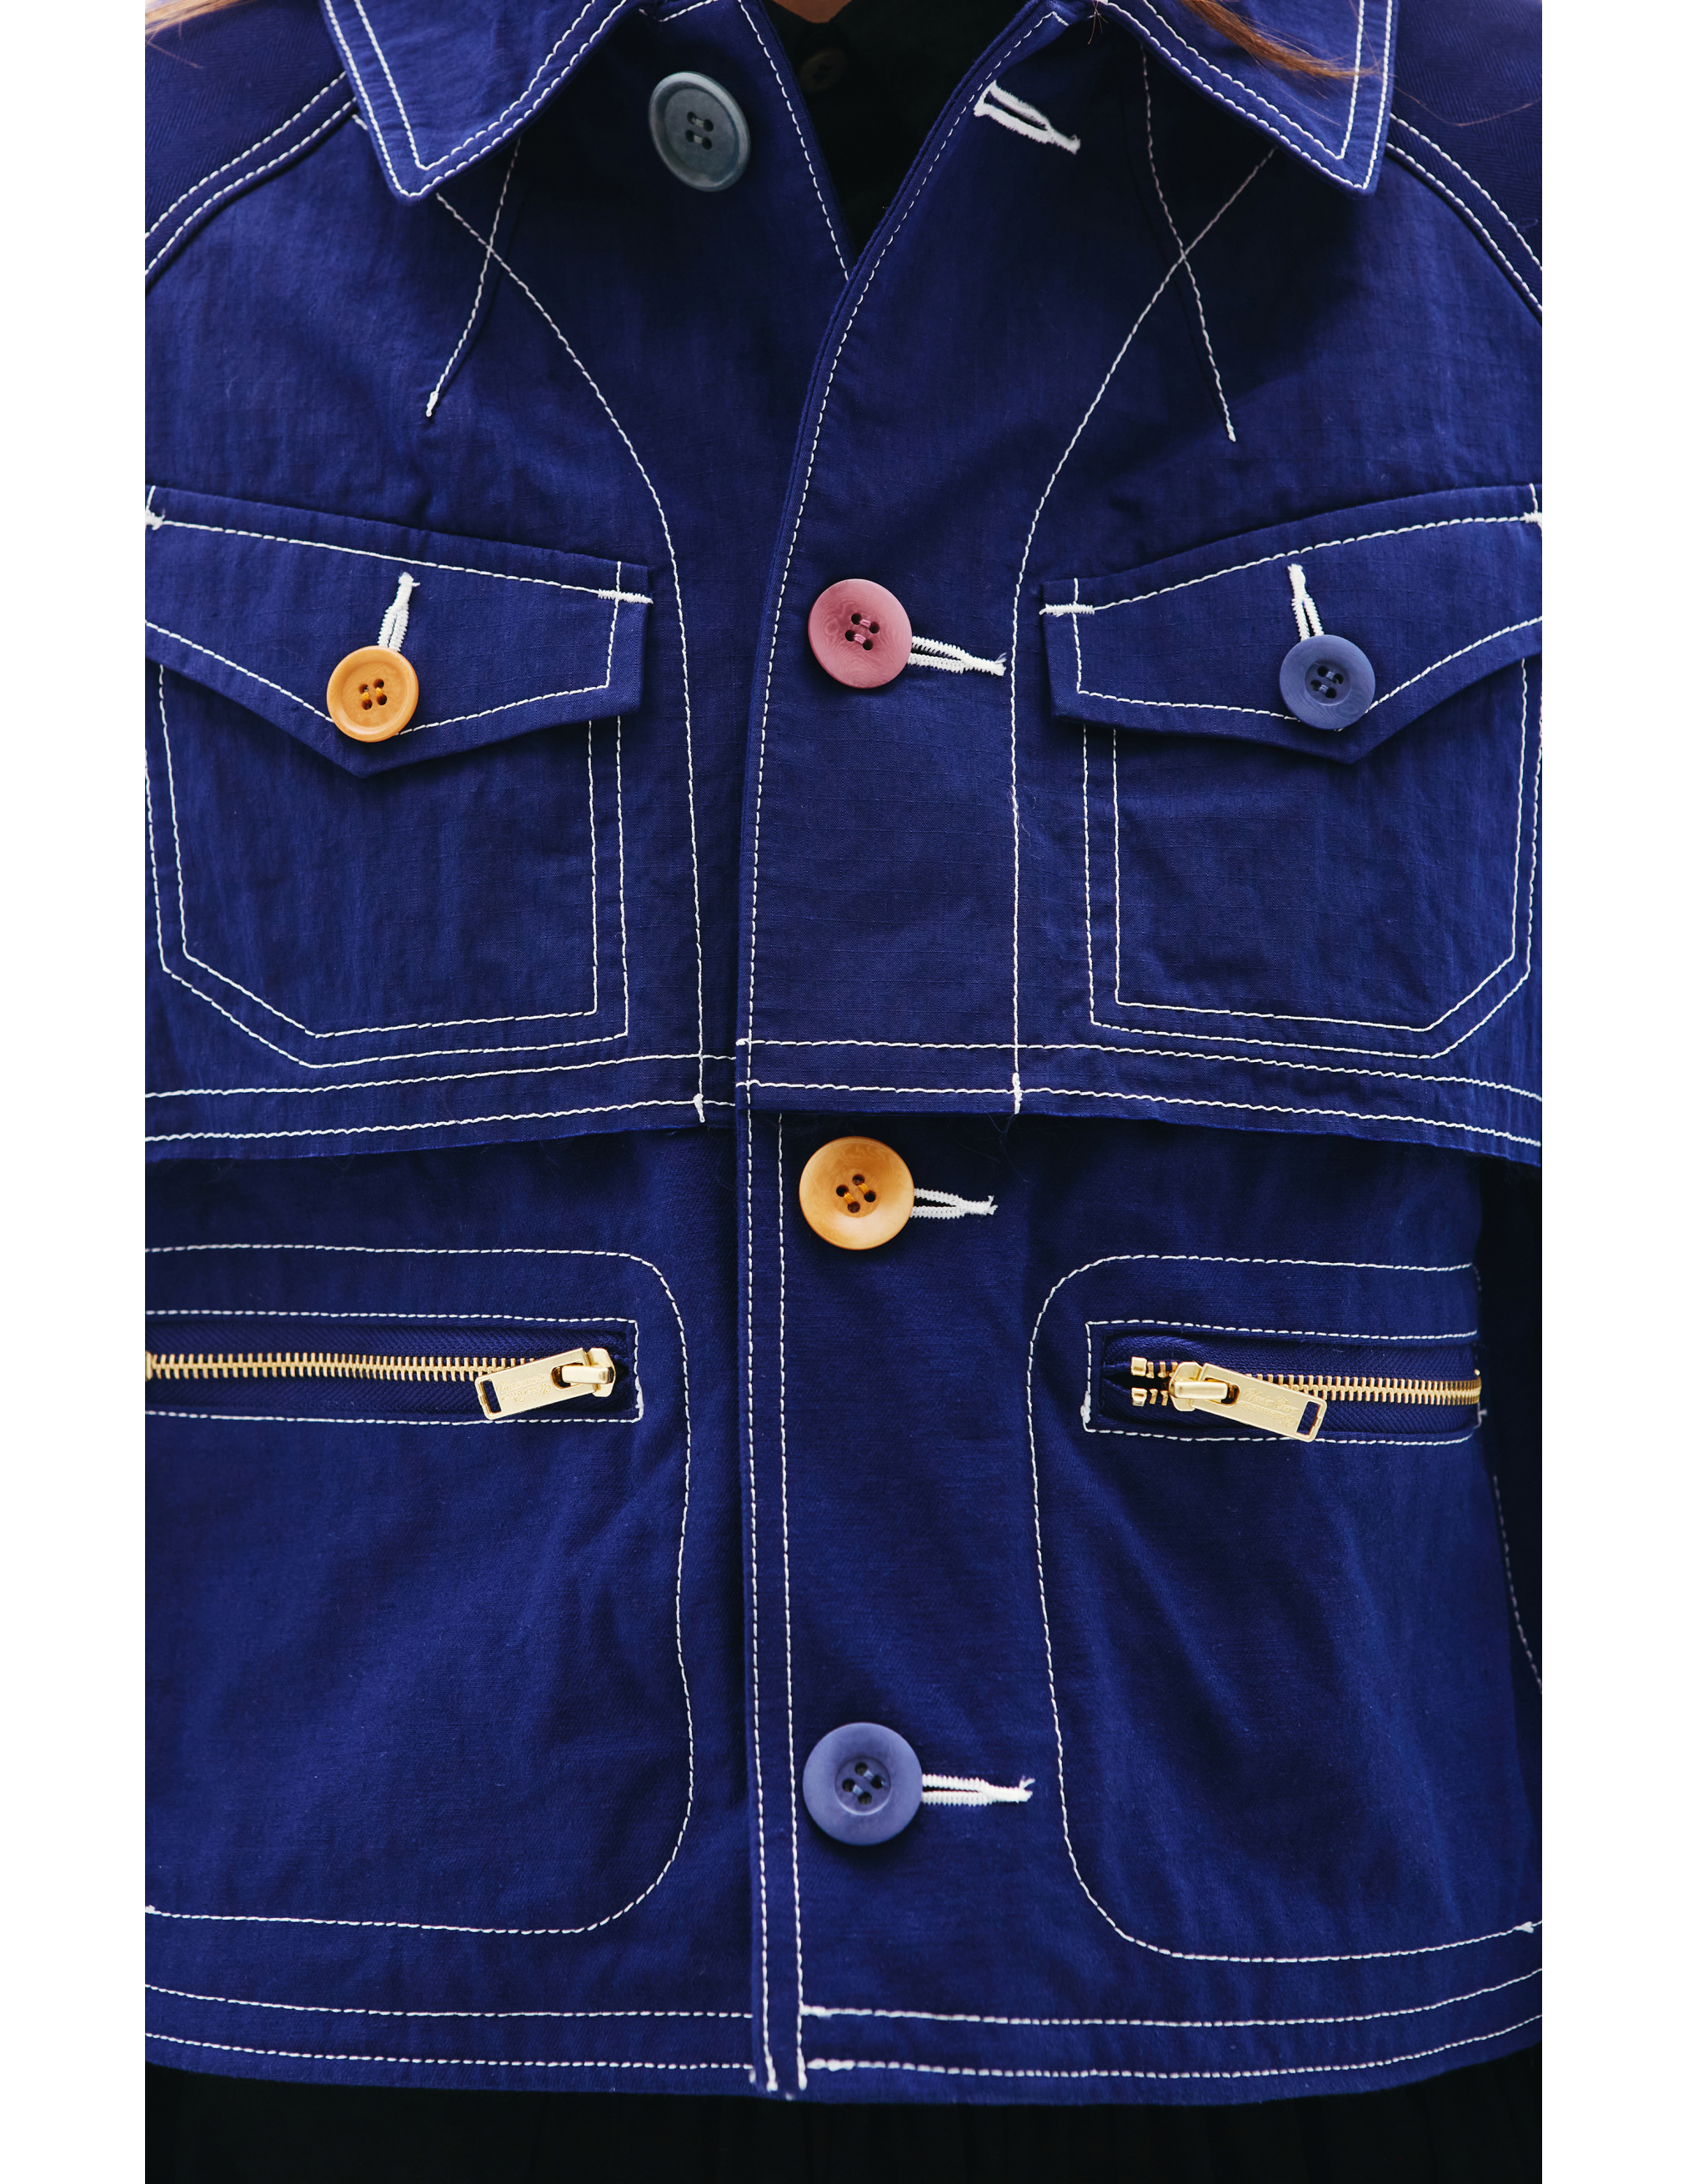 Укороченная джинсовая куртка Undercover UC1A1208, размер 2 - фото 4